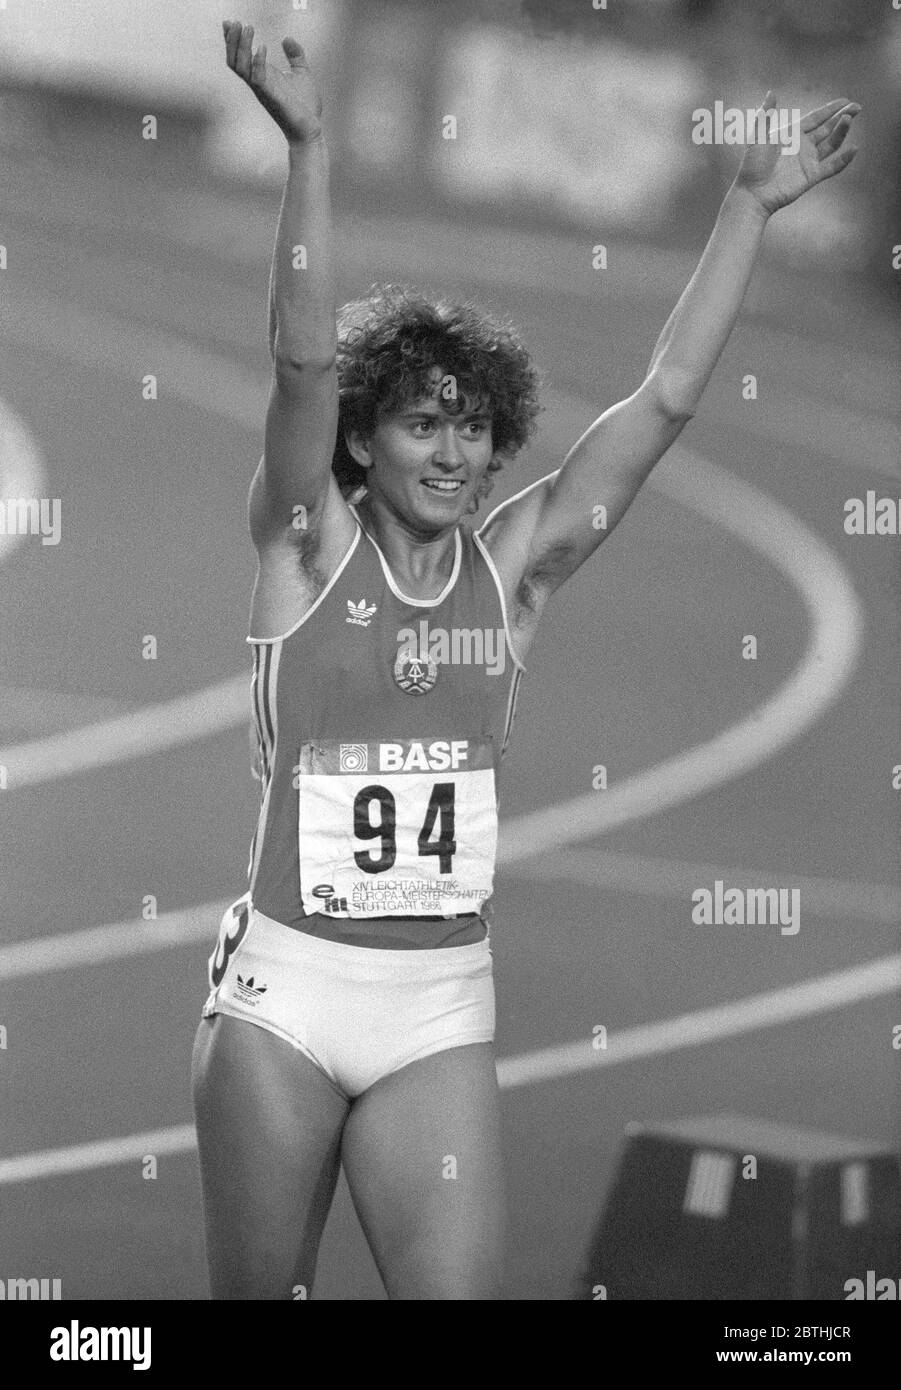 MARLIES GÖHR vincitore dello sprint tedesco orientale al Campionato europeo di Stoccarda 1986 Foto Stock